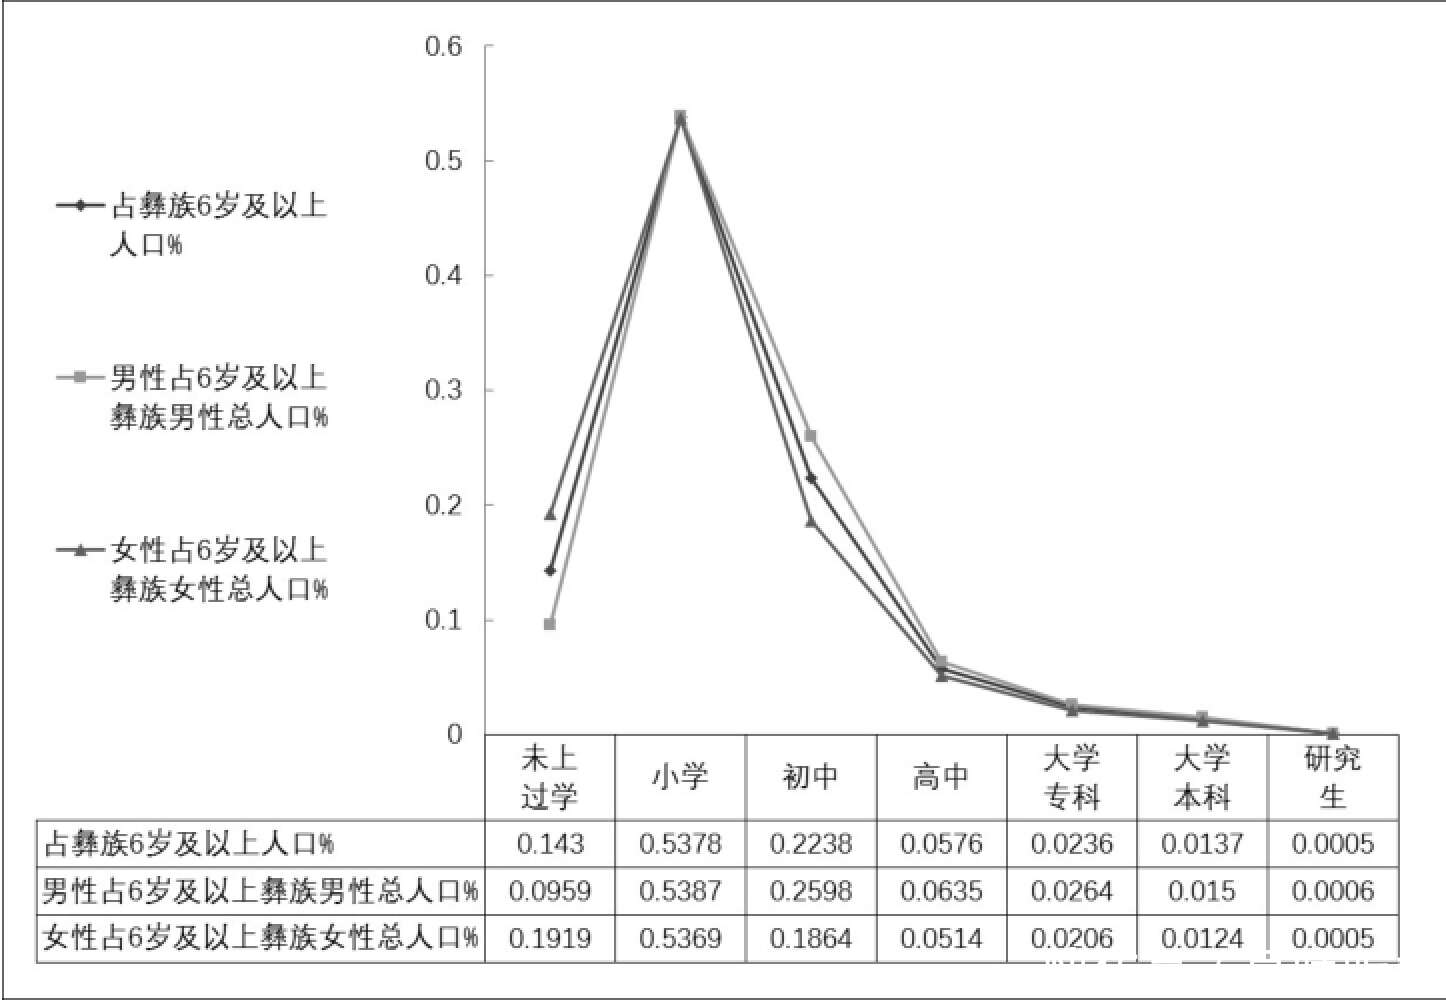 彝族人口结构特征分析 基于第六次人口普查数据分析 楠木轩